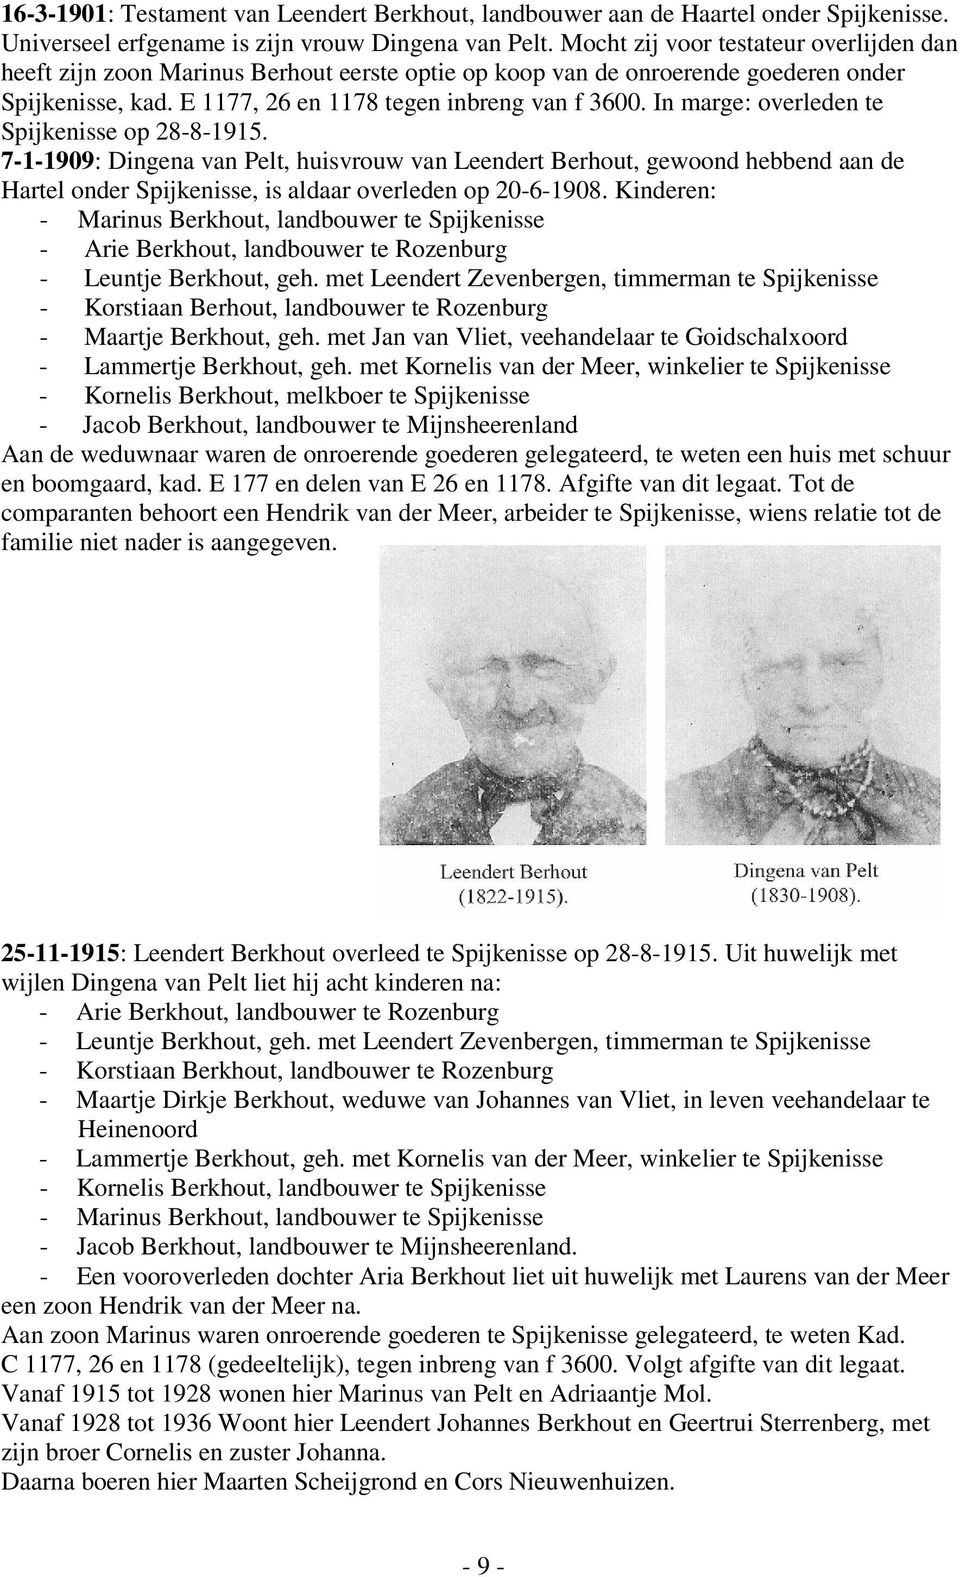 In marge: overleden te Spijkenisse op 28-8-1915. 7-1-1909: Dingena van Pelt, huisvrouw van Leendert Berhout, gewoond hebbend aan de Hartel onder Spijkenisse, is aldaar overleden op 20-6-1908.